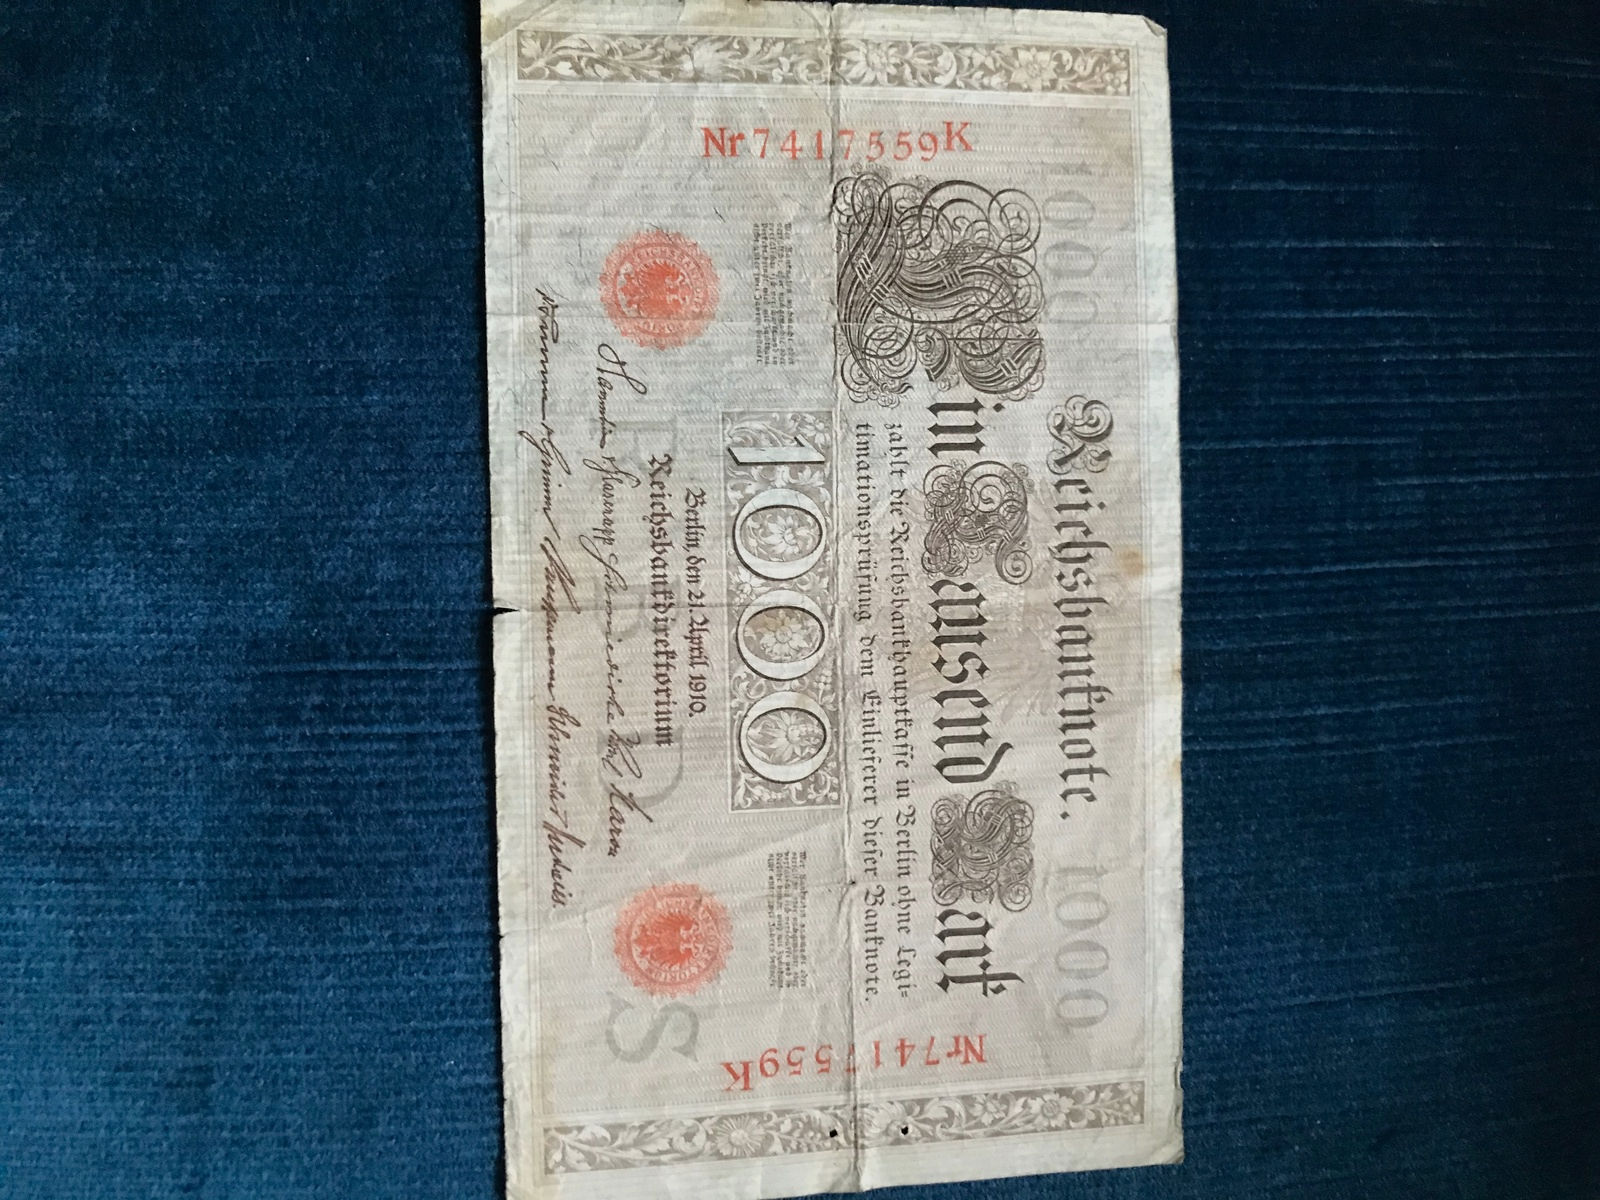 1000 Reichsmark Schein und 2x One Dollar Scheine.